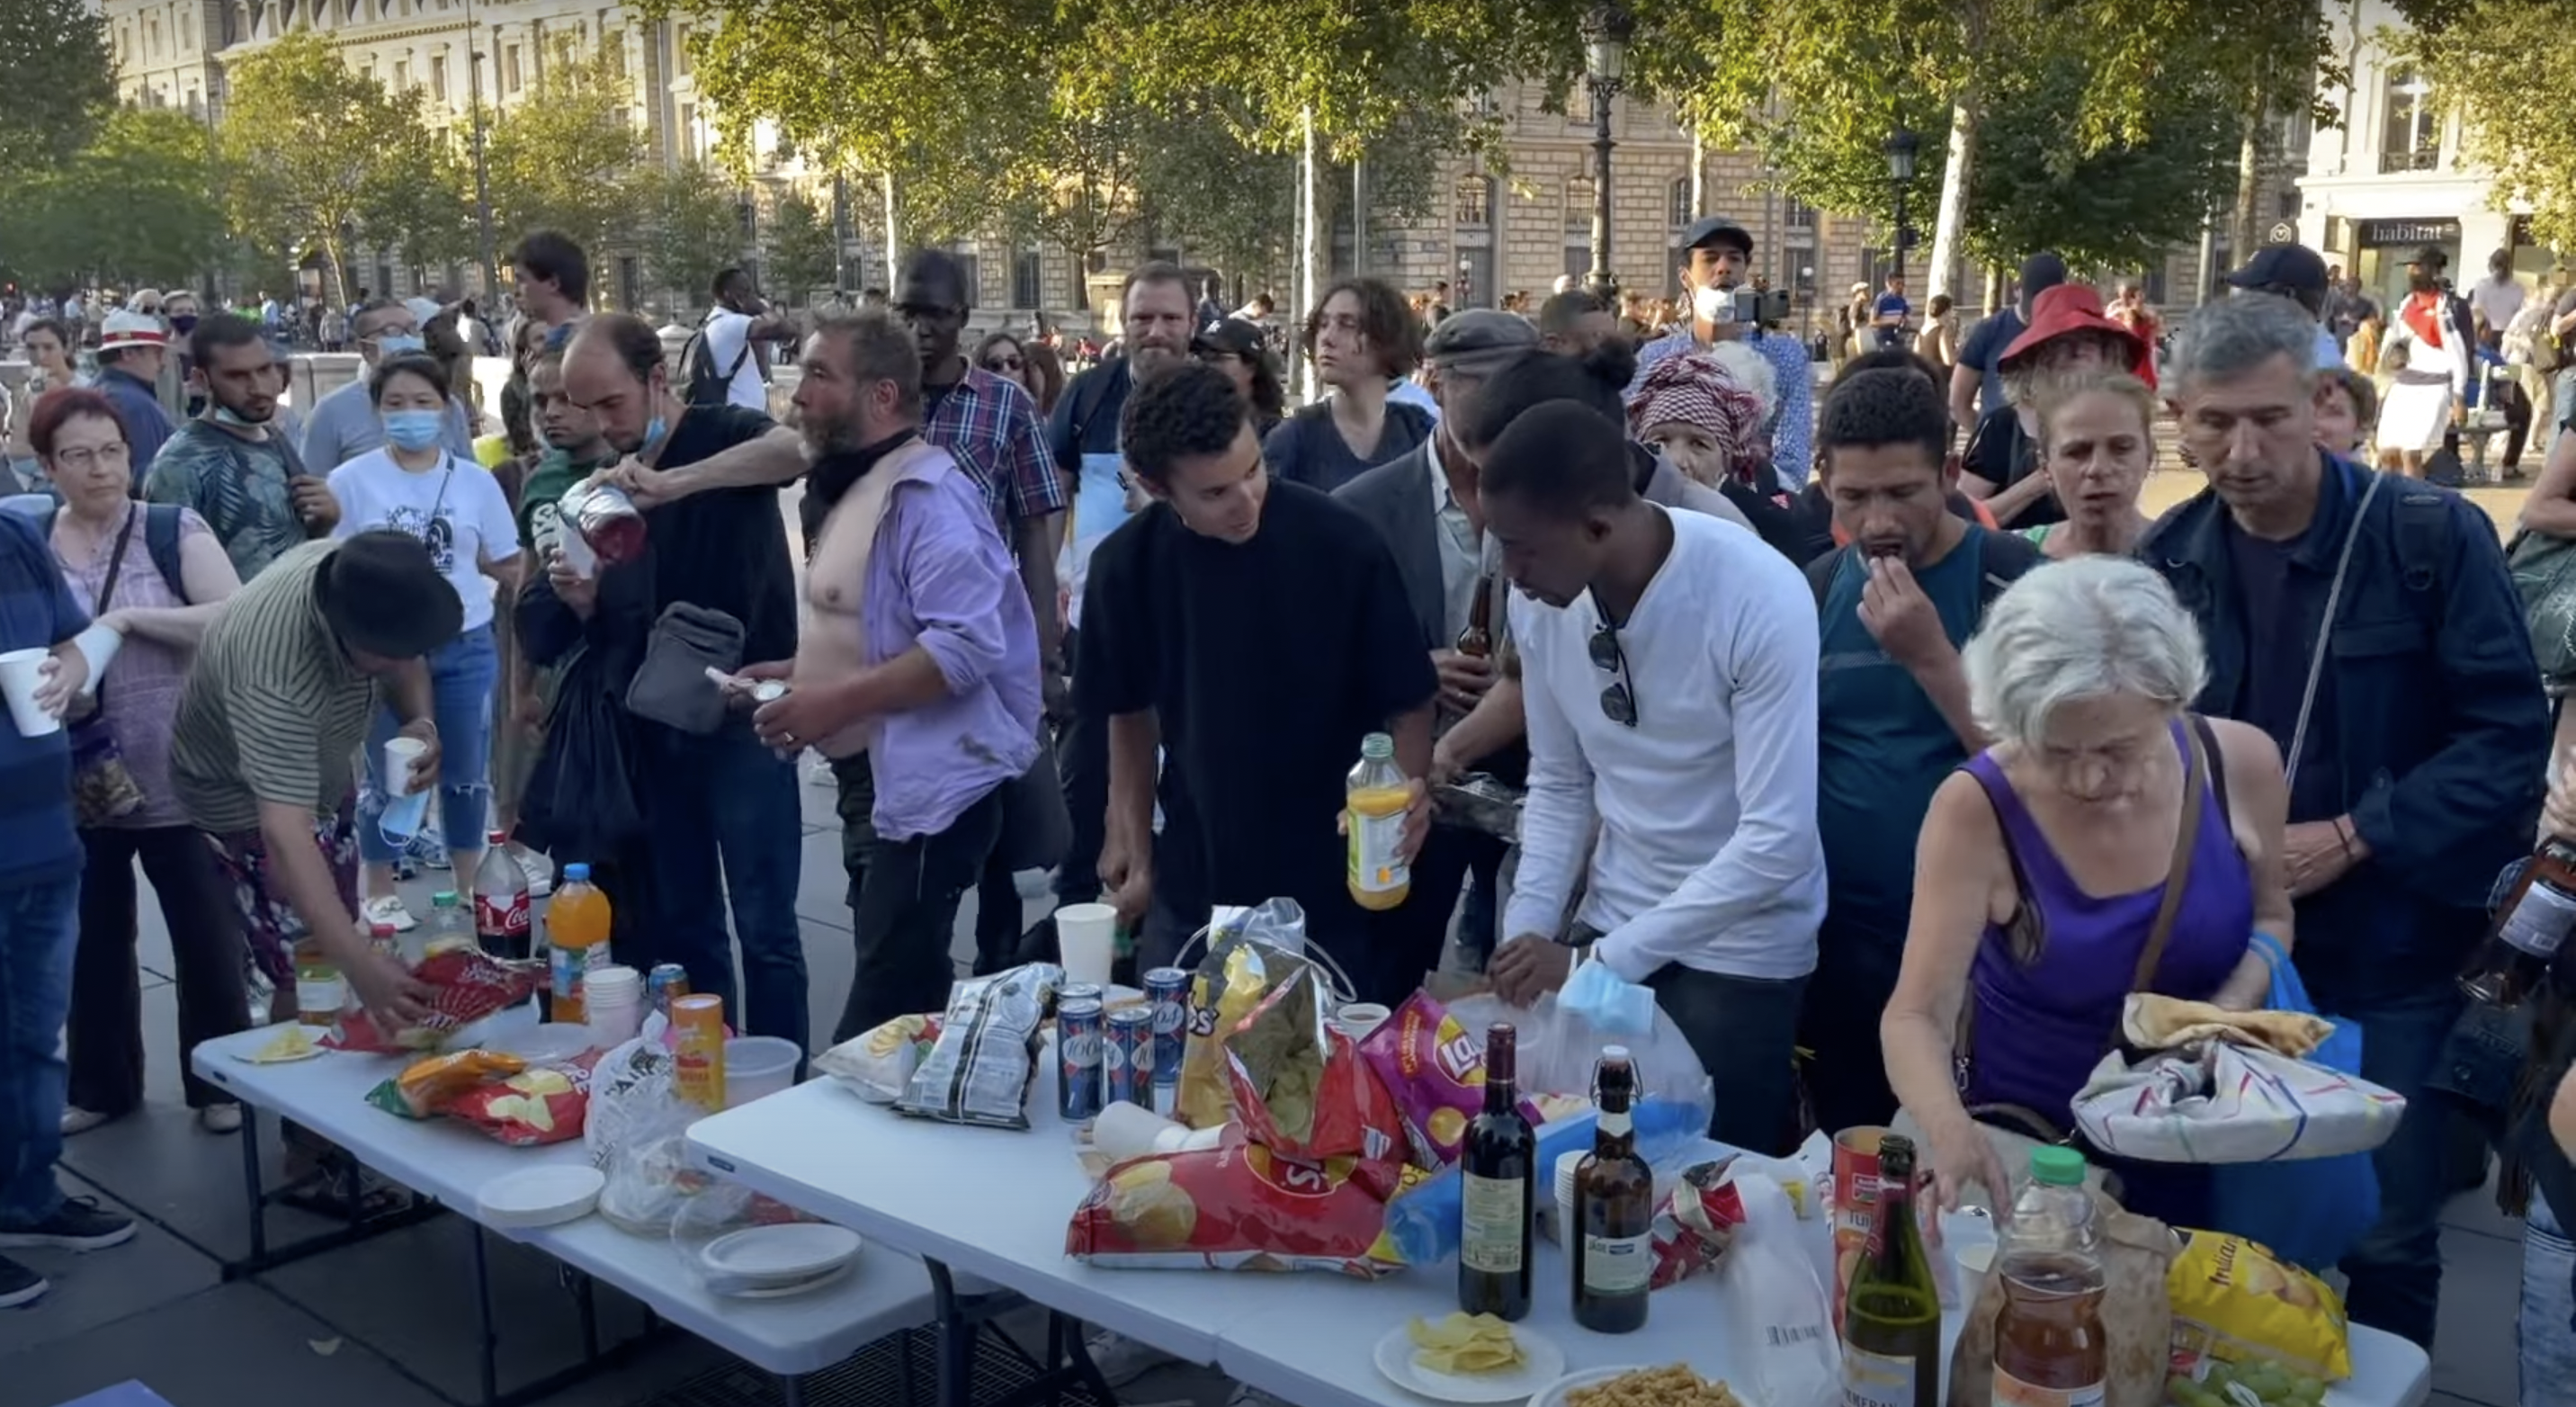 【イルミナティの敗北】仏でワクチンパスポート導入の飲食店はガラガラ、庶民はパスポート不要の広場で宴会、さらに大規模デモ開催